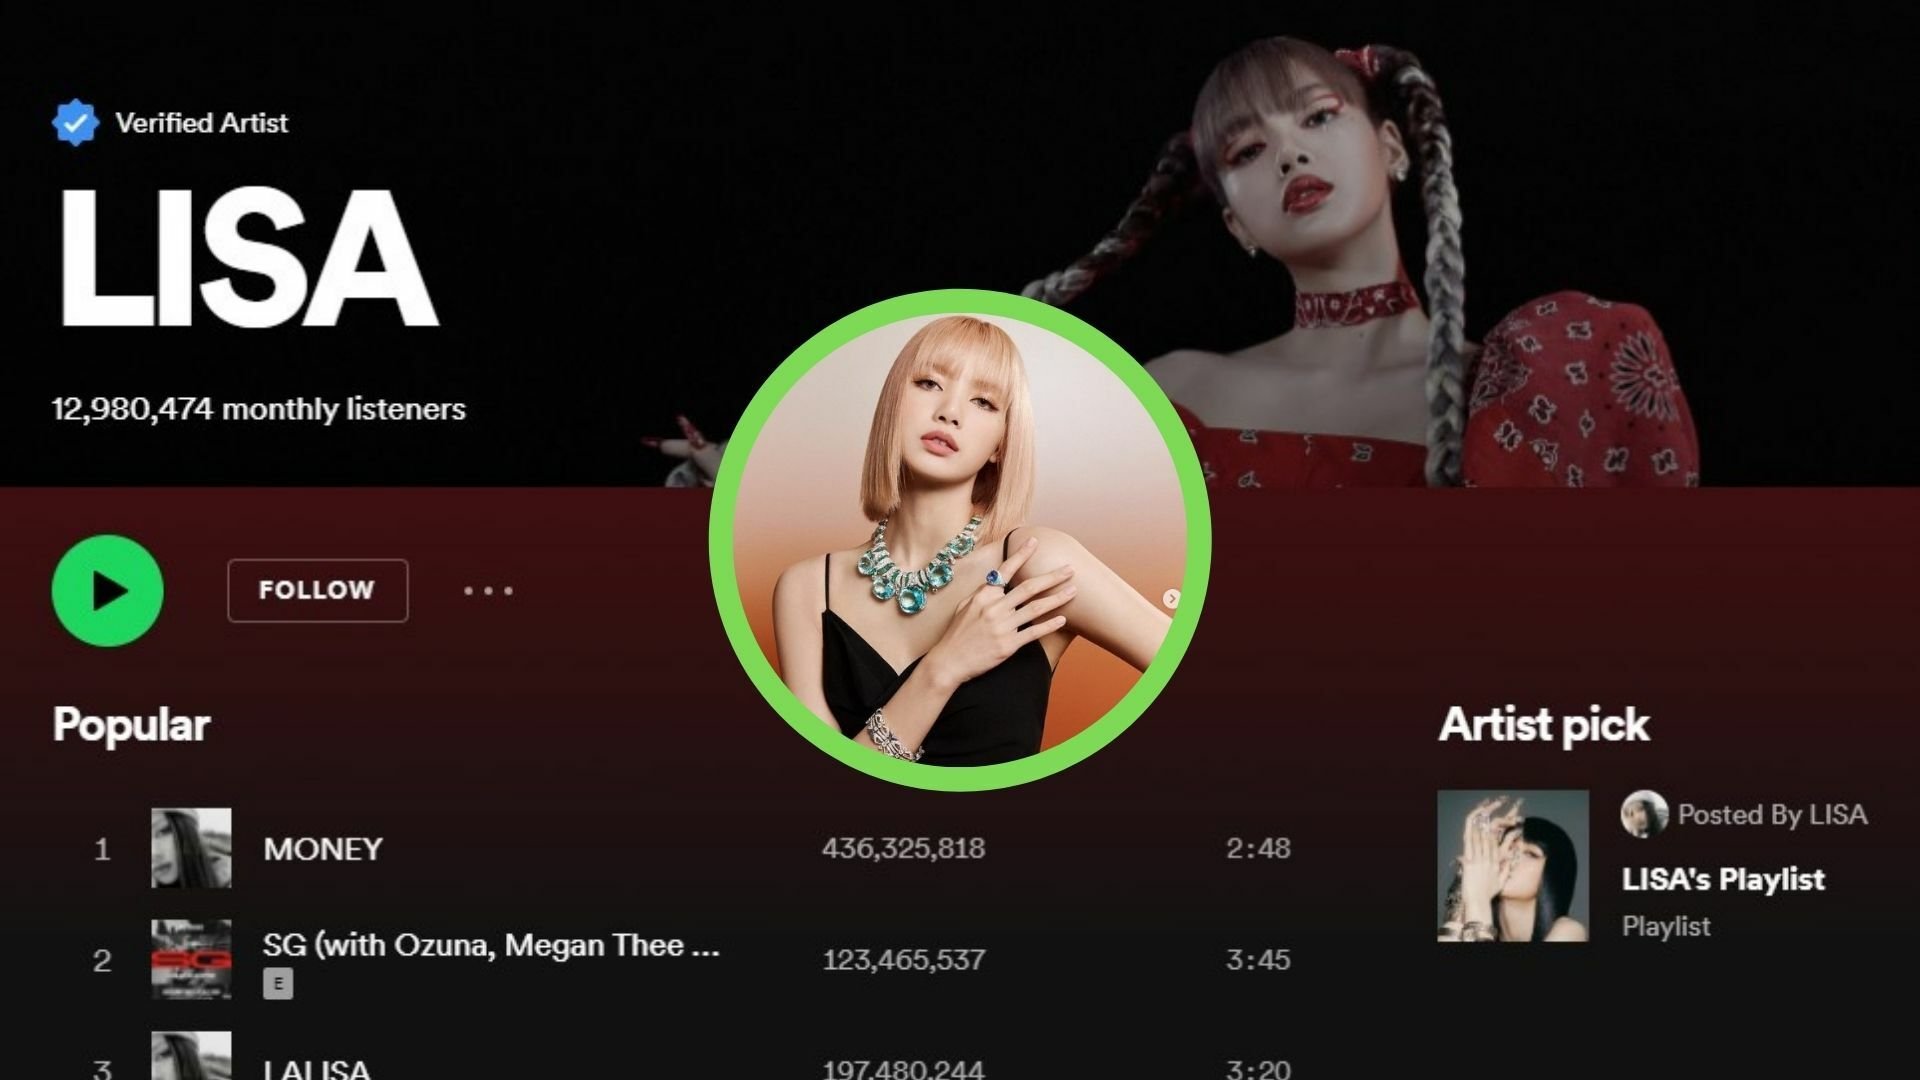 ลิซ่า BLACKPINK คว้าอันดับ 2 ผู้ติดตามสูงสุดใน Spotify หมวดศิลปินหญิงเดี่ยวของ K-pop